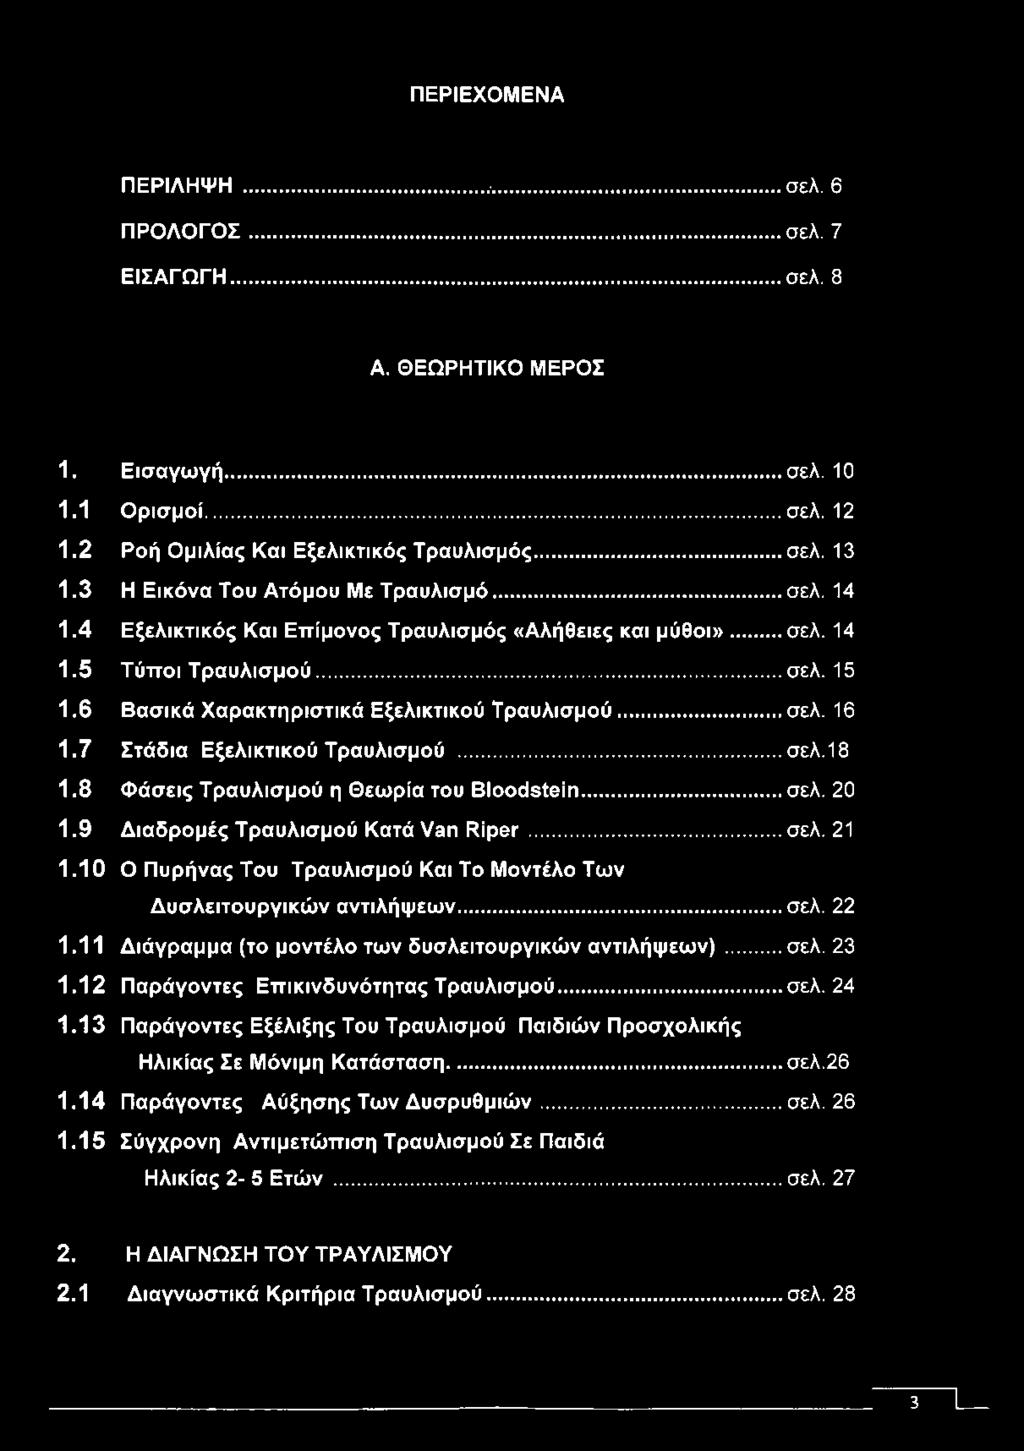 .. σελ. 16 1.7 Στάδια Εξελικτικού Τραυλισμού...σελ.18 1.8 Φάσεις Τραυλισμού η Θεωρία του Bloodstein... σελ. 20 1.9 Διαδρομές Τραυλισμού Κατά Van Riper... σελ. 21 1.